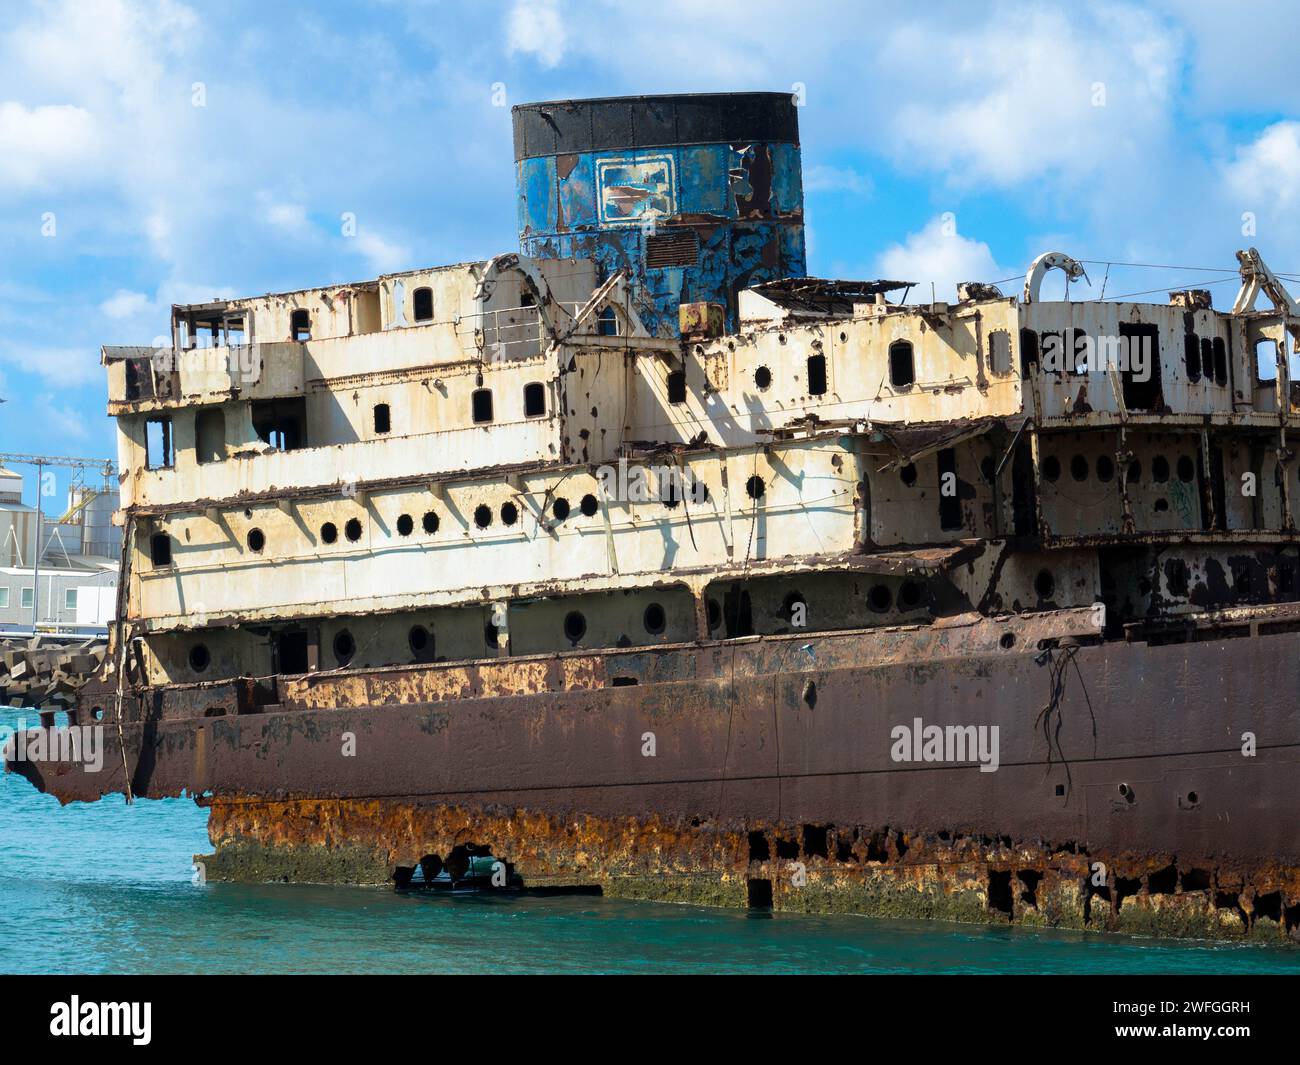 Verlorener Ort. Schiffswrack namens Tempelhalle oder Telamon in einer Bucht in der Nähe des Industriehafens Arrecifes auf den Kanarischen Inseln Lanzarote. Ökologische Katastrophe. Stockfoto